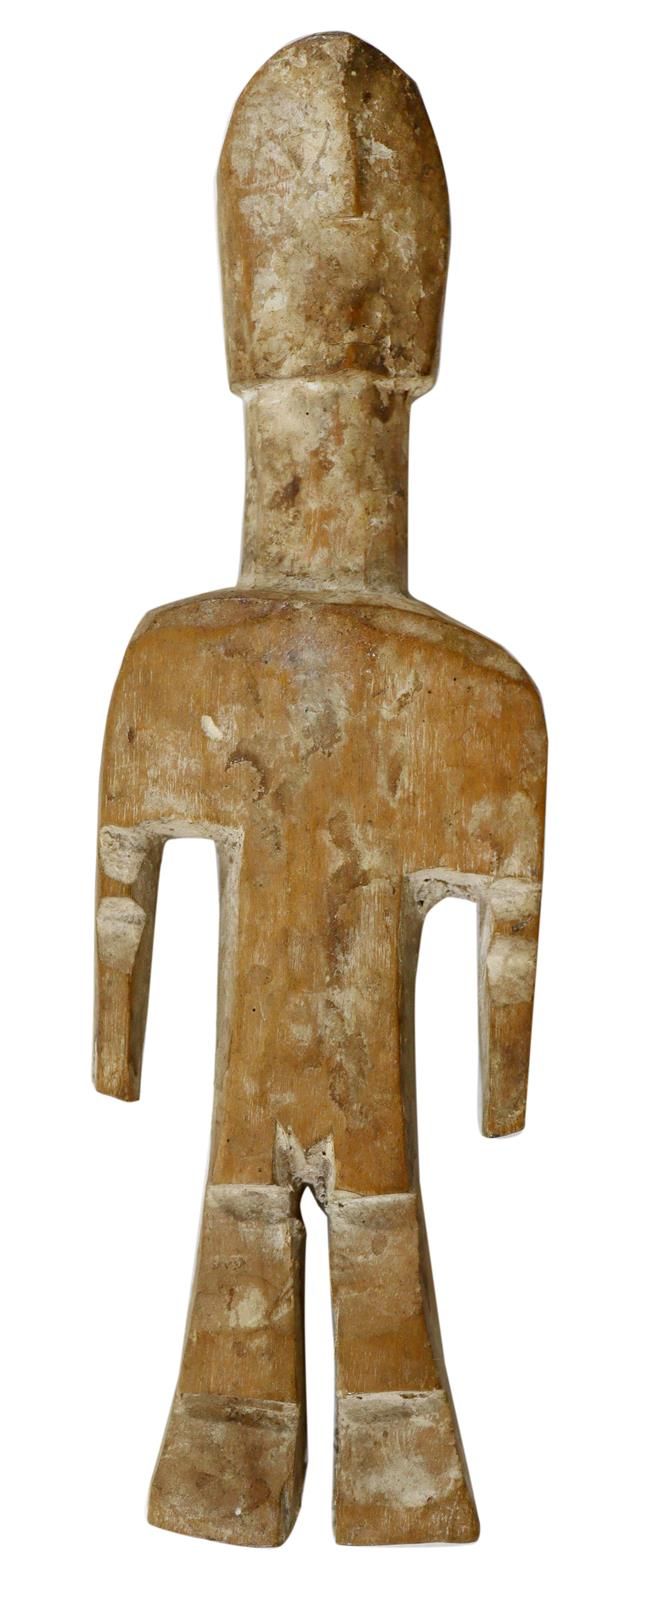 Ahnenfigur wohl Lega 博士。刚果。天真地雕刻的男性形象。淡淡的木香，头在长颈上。高：16厘米。 D